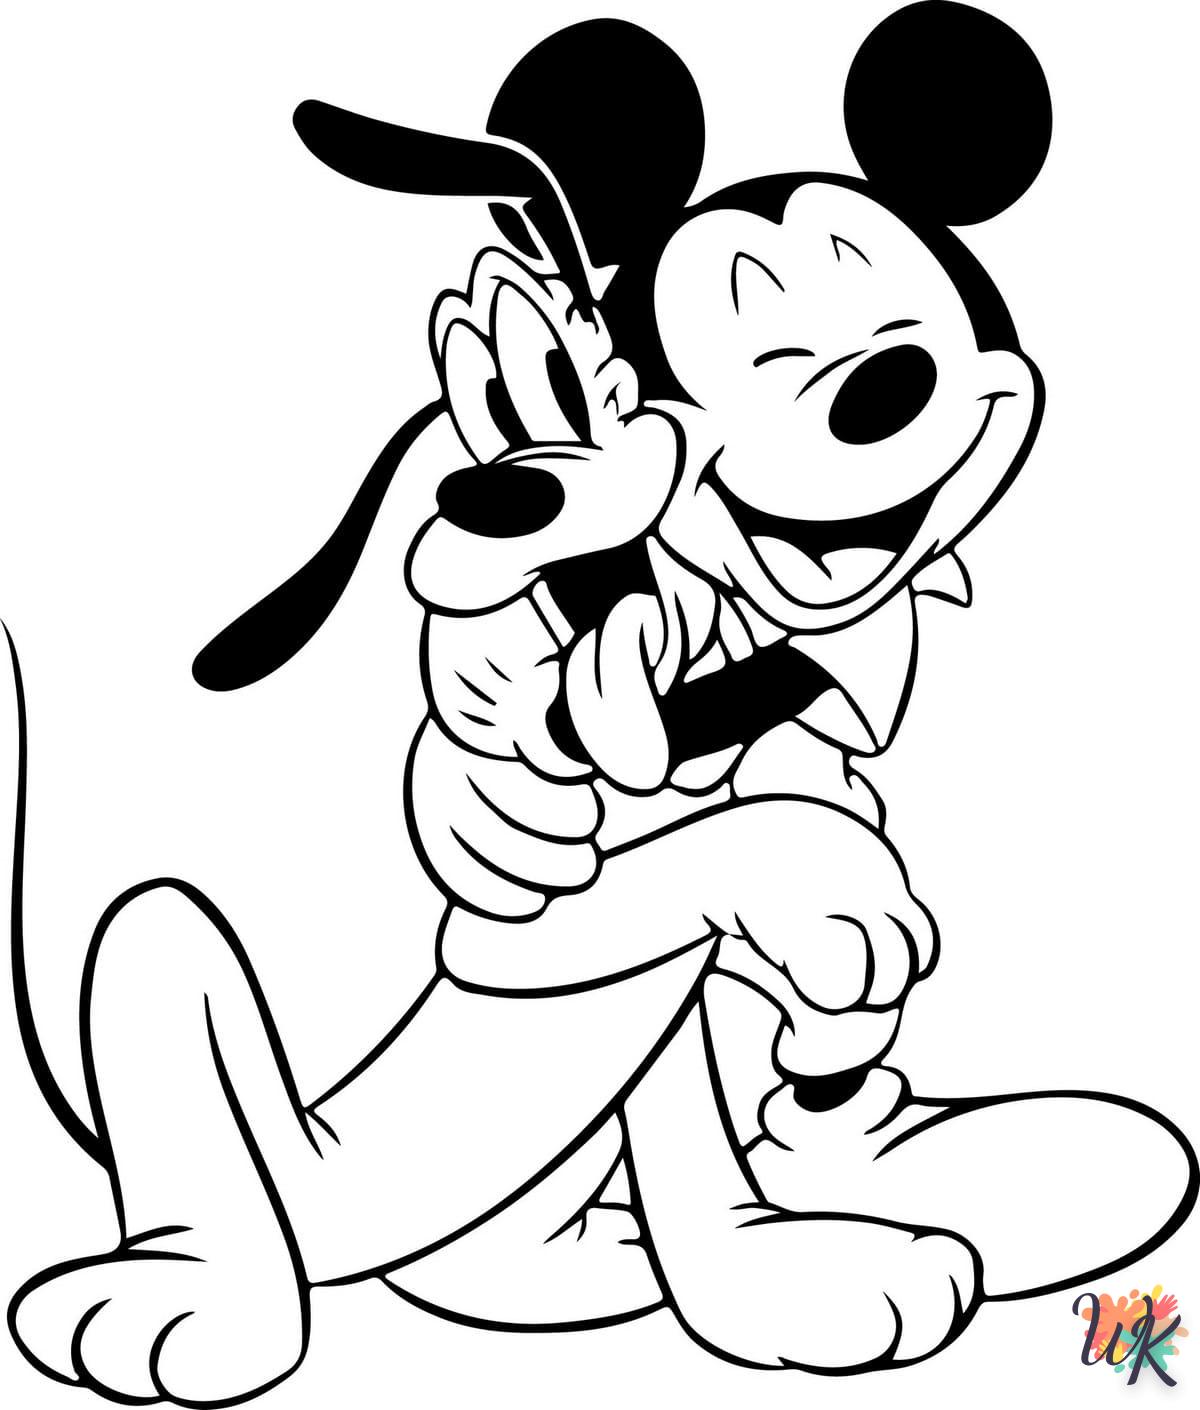 Dibujos para Colorear mickey mouse 38